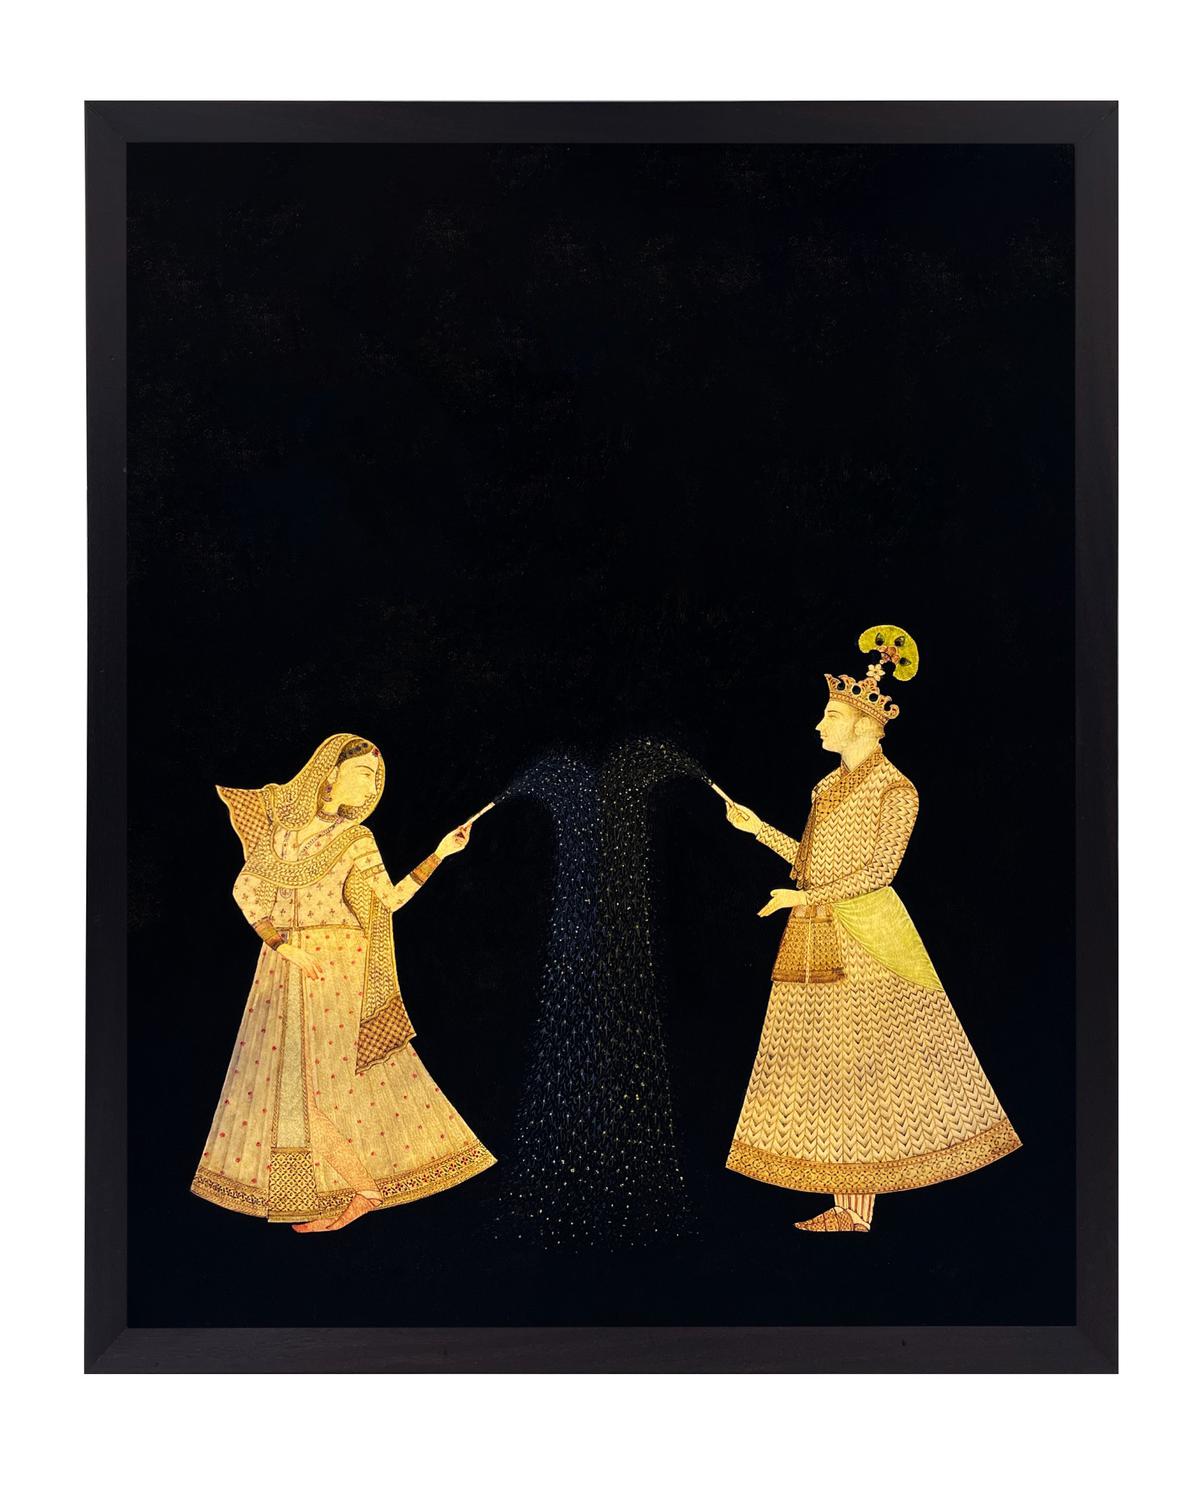 Riyazuddin’s illuminated leather miniatures